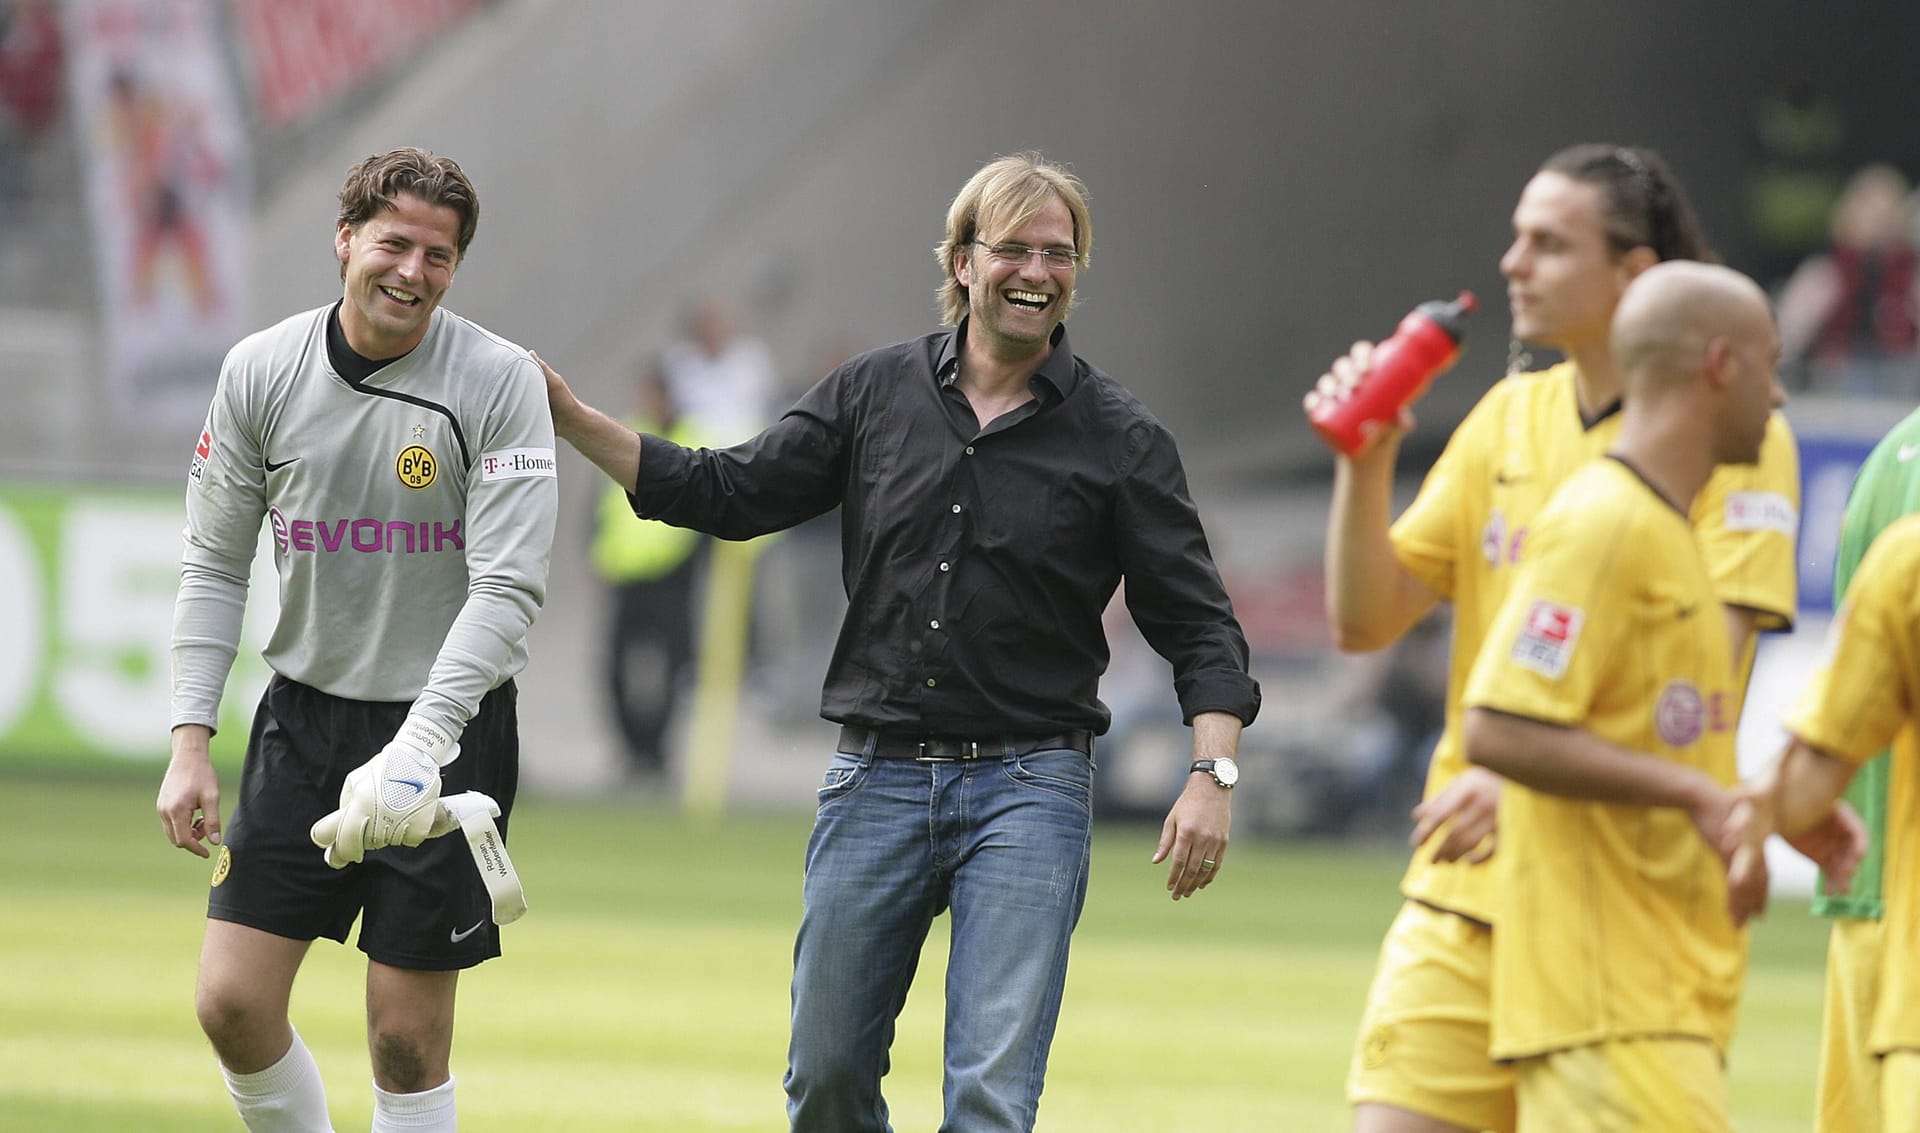 Lange bleibt Klopp der Trainerbank aber nicht fern. Ab Sommer 2008 übernimmt er Borussia Dortmund. Klopps erste Worte in Dortmund: "Ich freue mich sehr, dass ich hier bin. Es ist mir eine Ehre." Es ist der Beginn einer absoluten Erfolgsgeschichte.